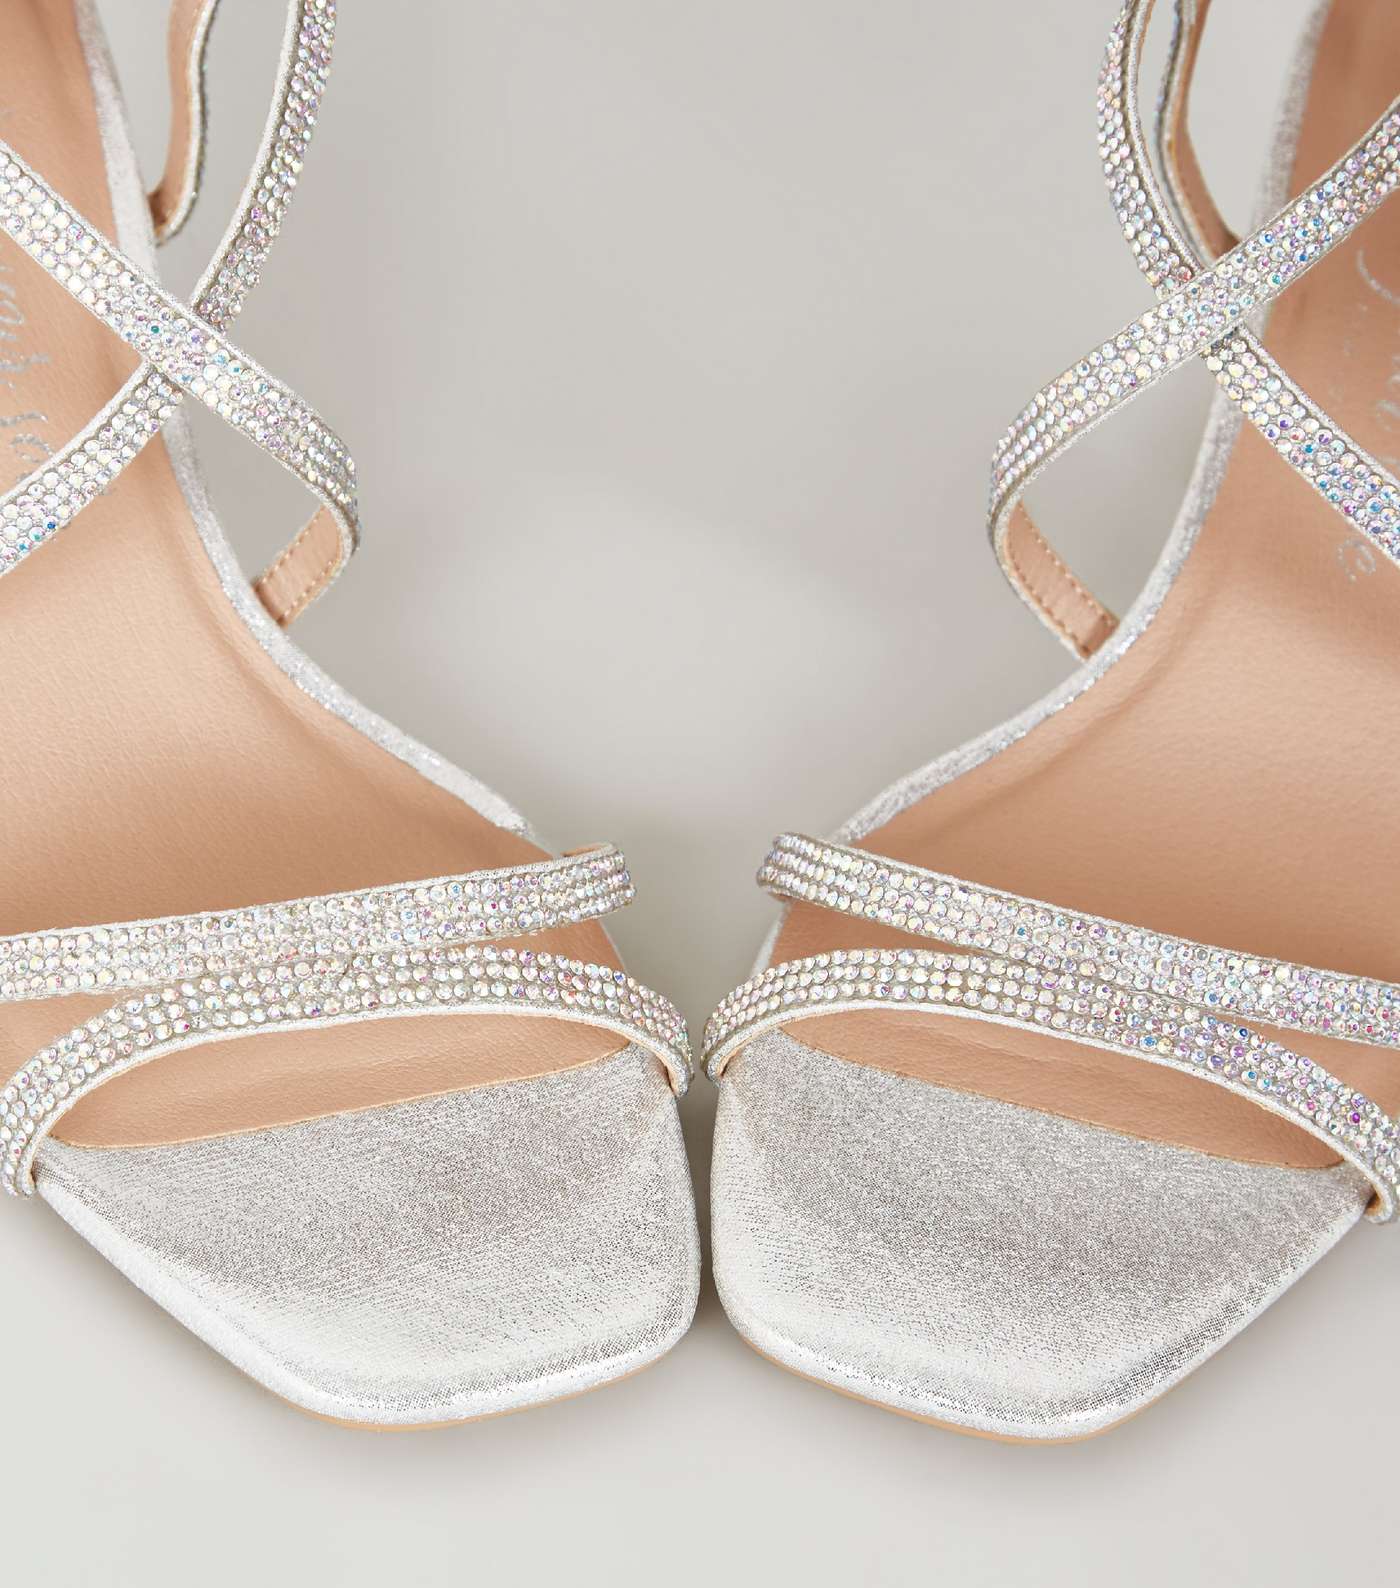 Wide Fit Silver Diamanté Strap Sandals Image 4